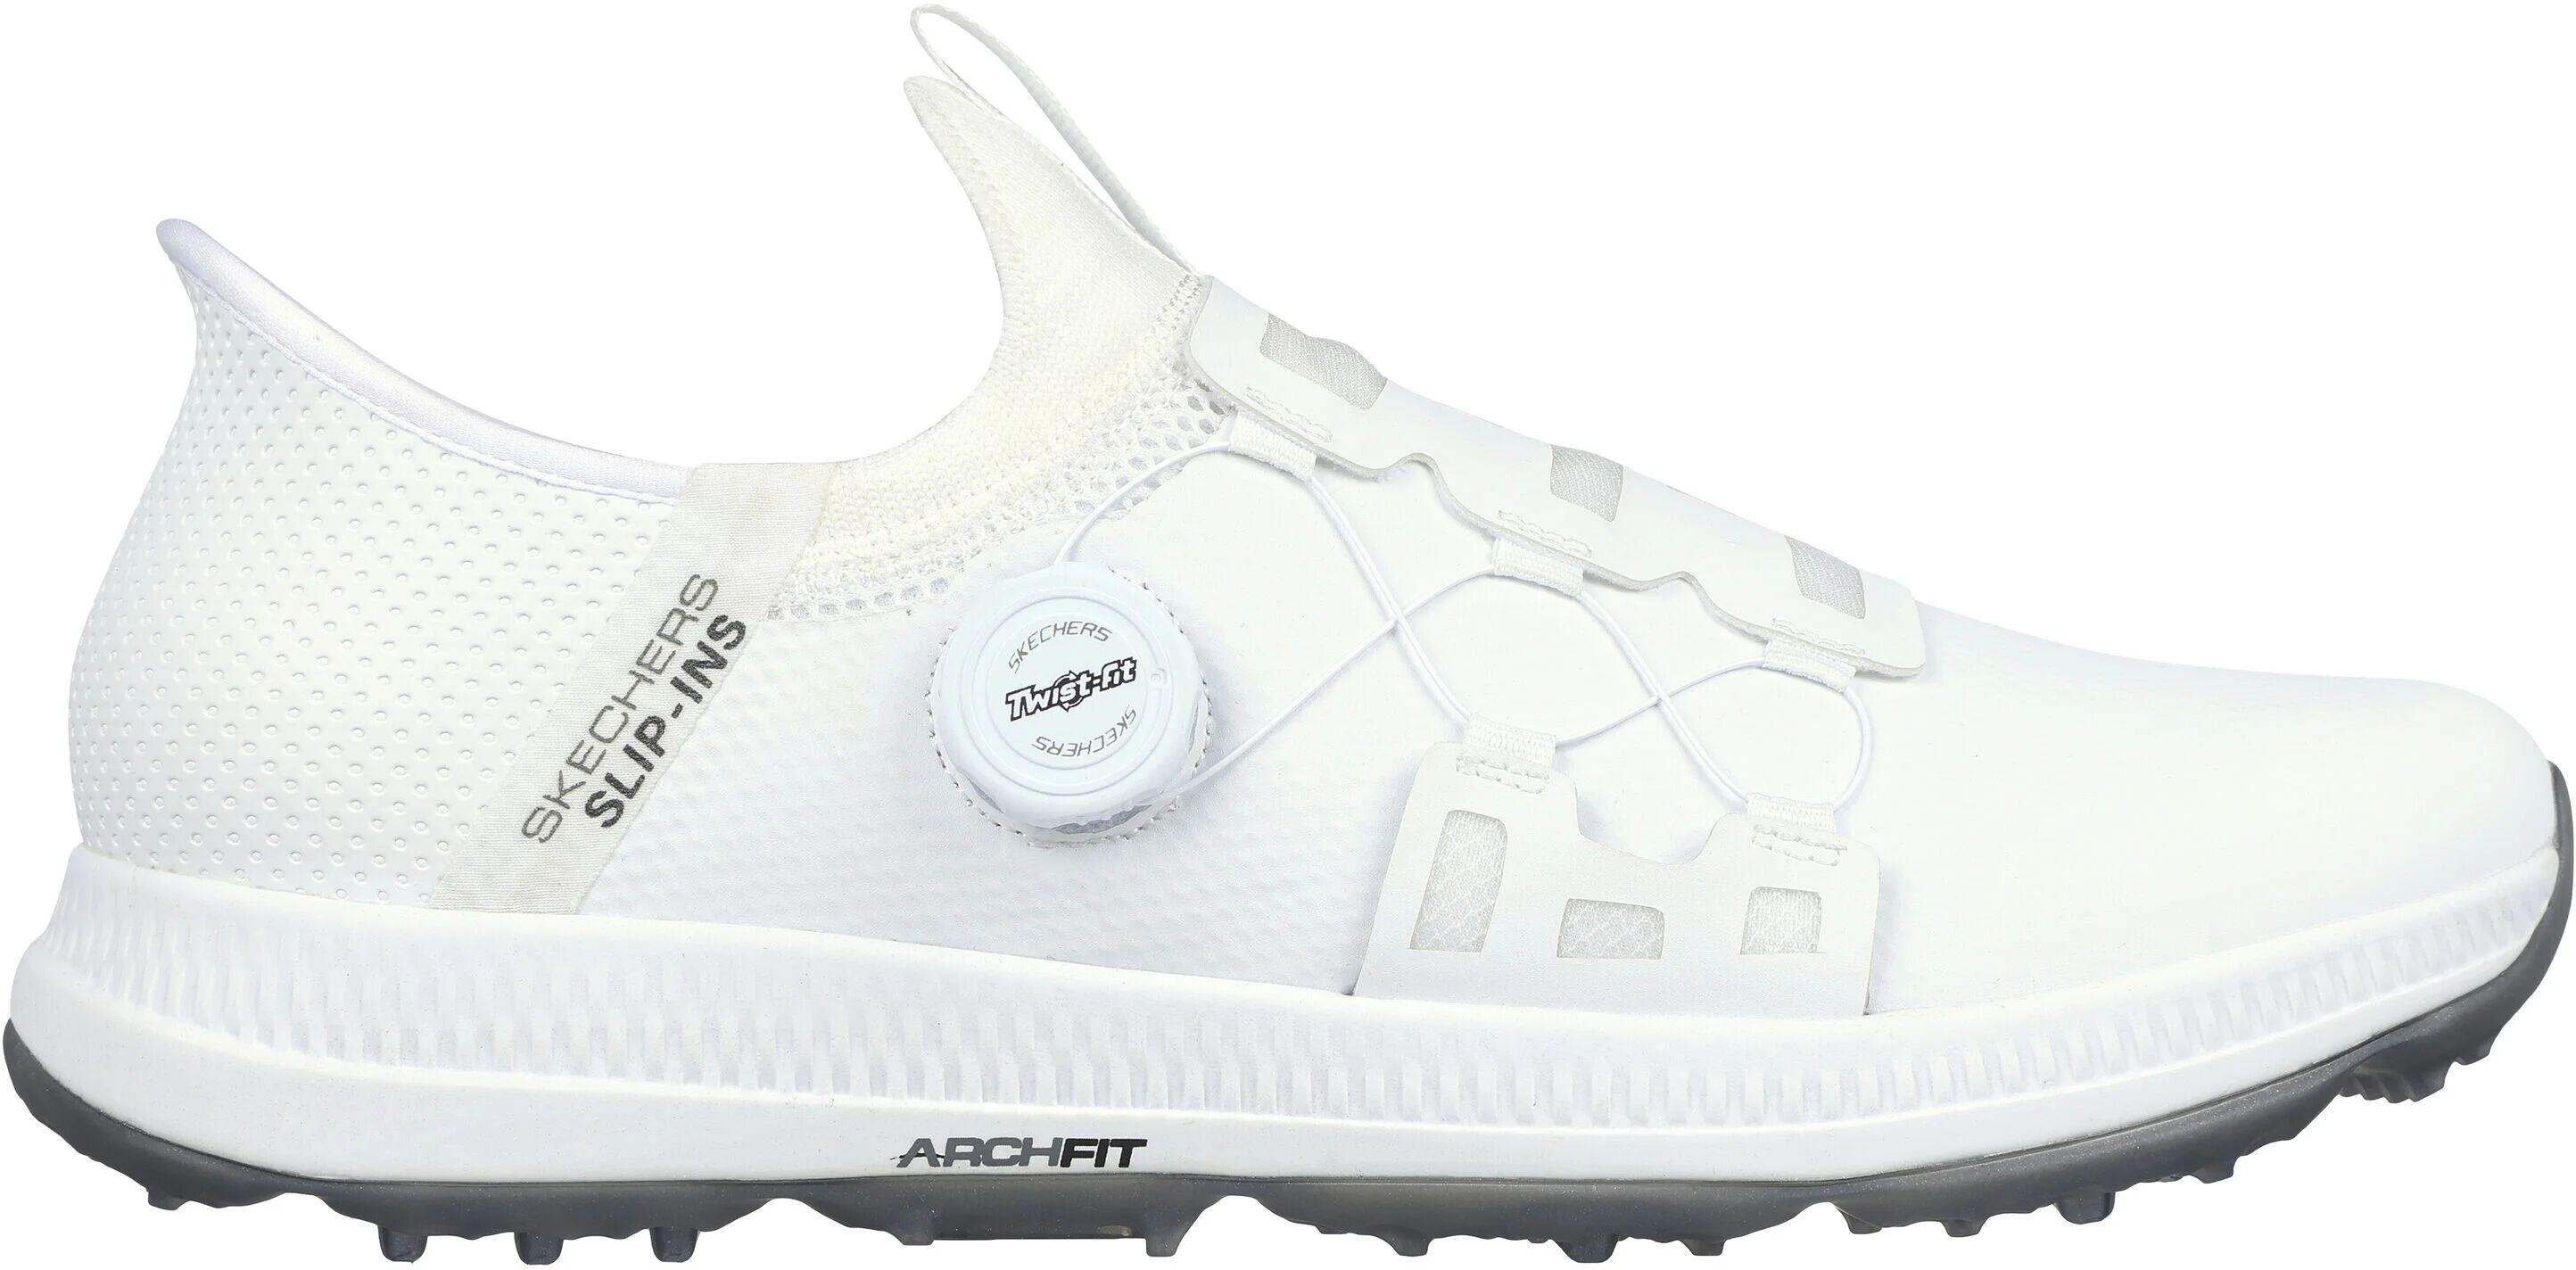 Skechers GO GOLF Elite 5 Slip In Golf Shoes - White - 9 - MEDIUM